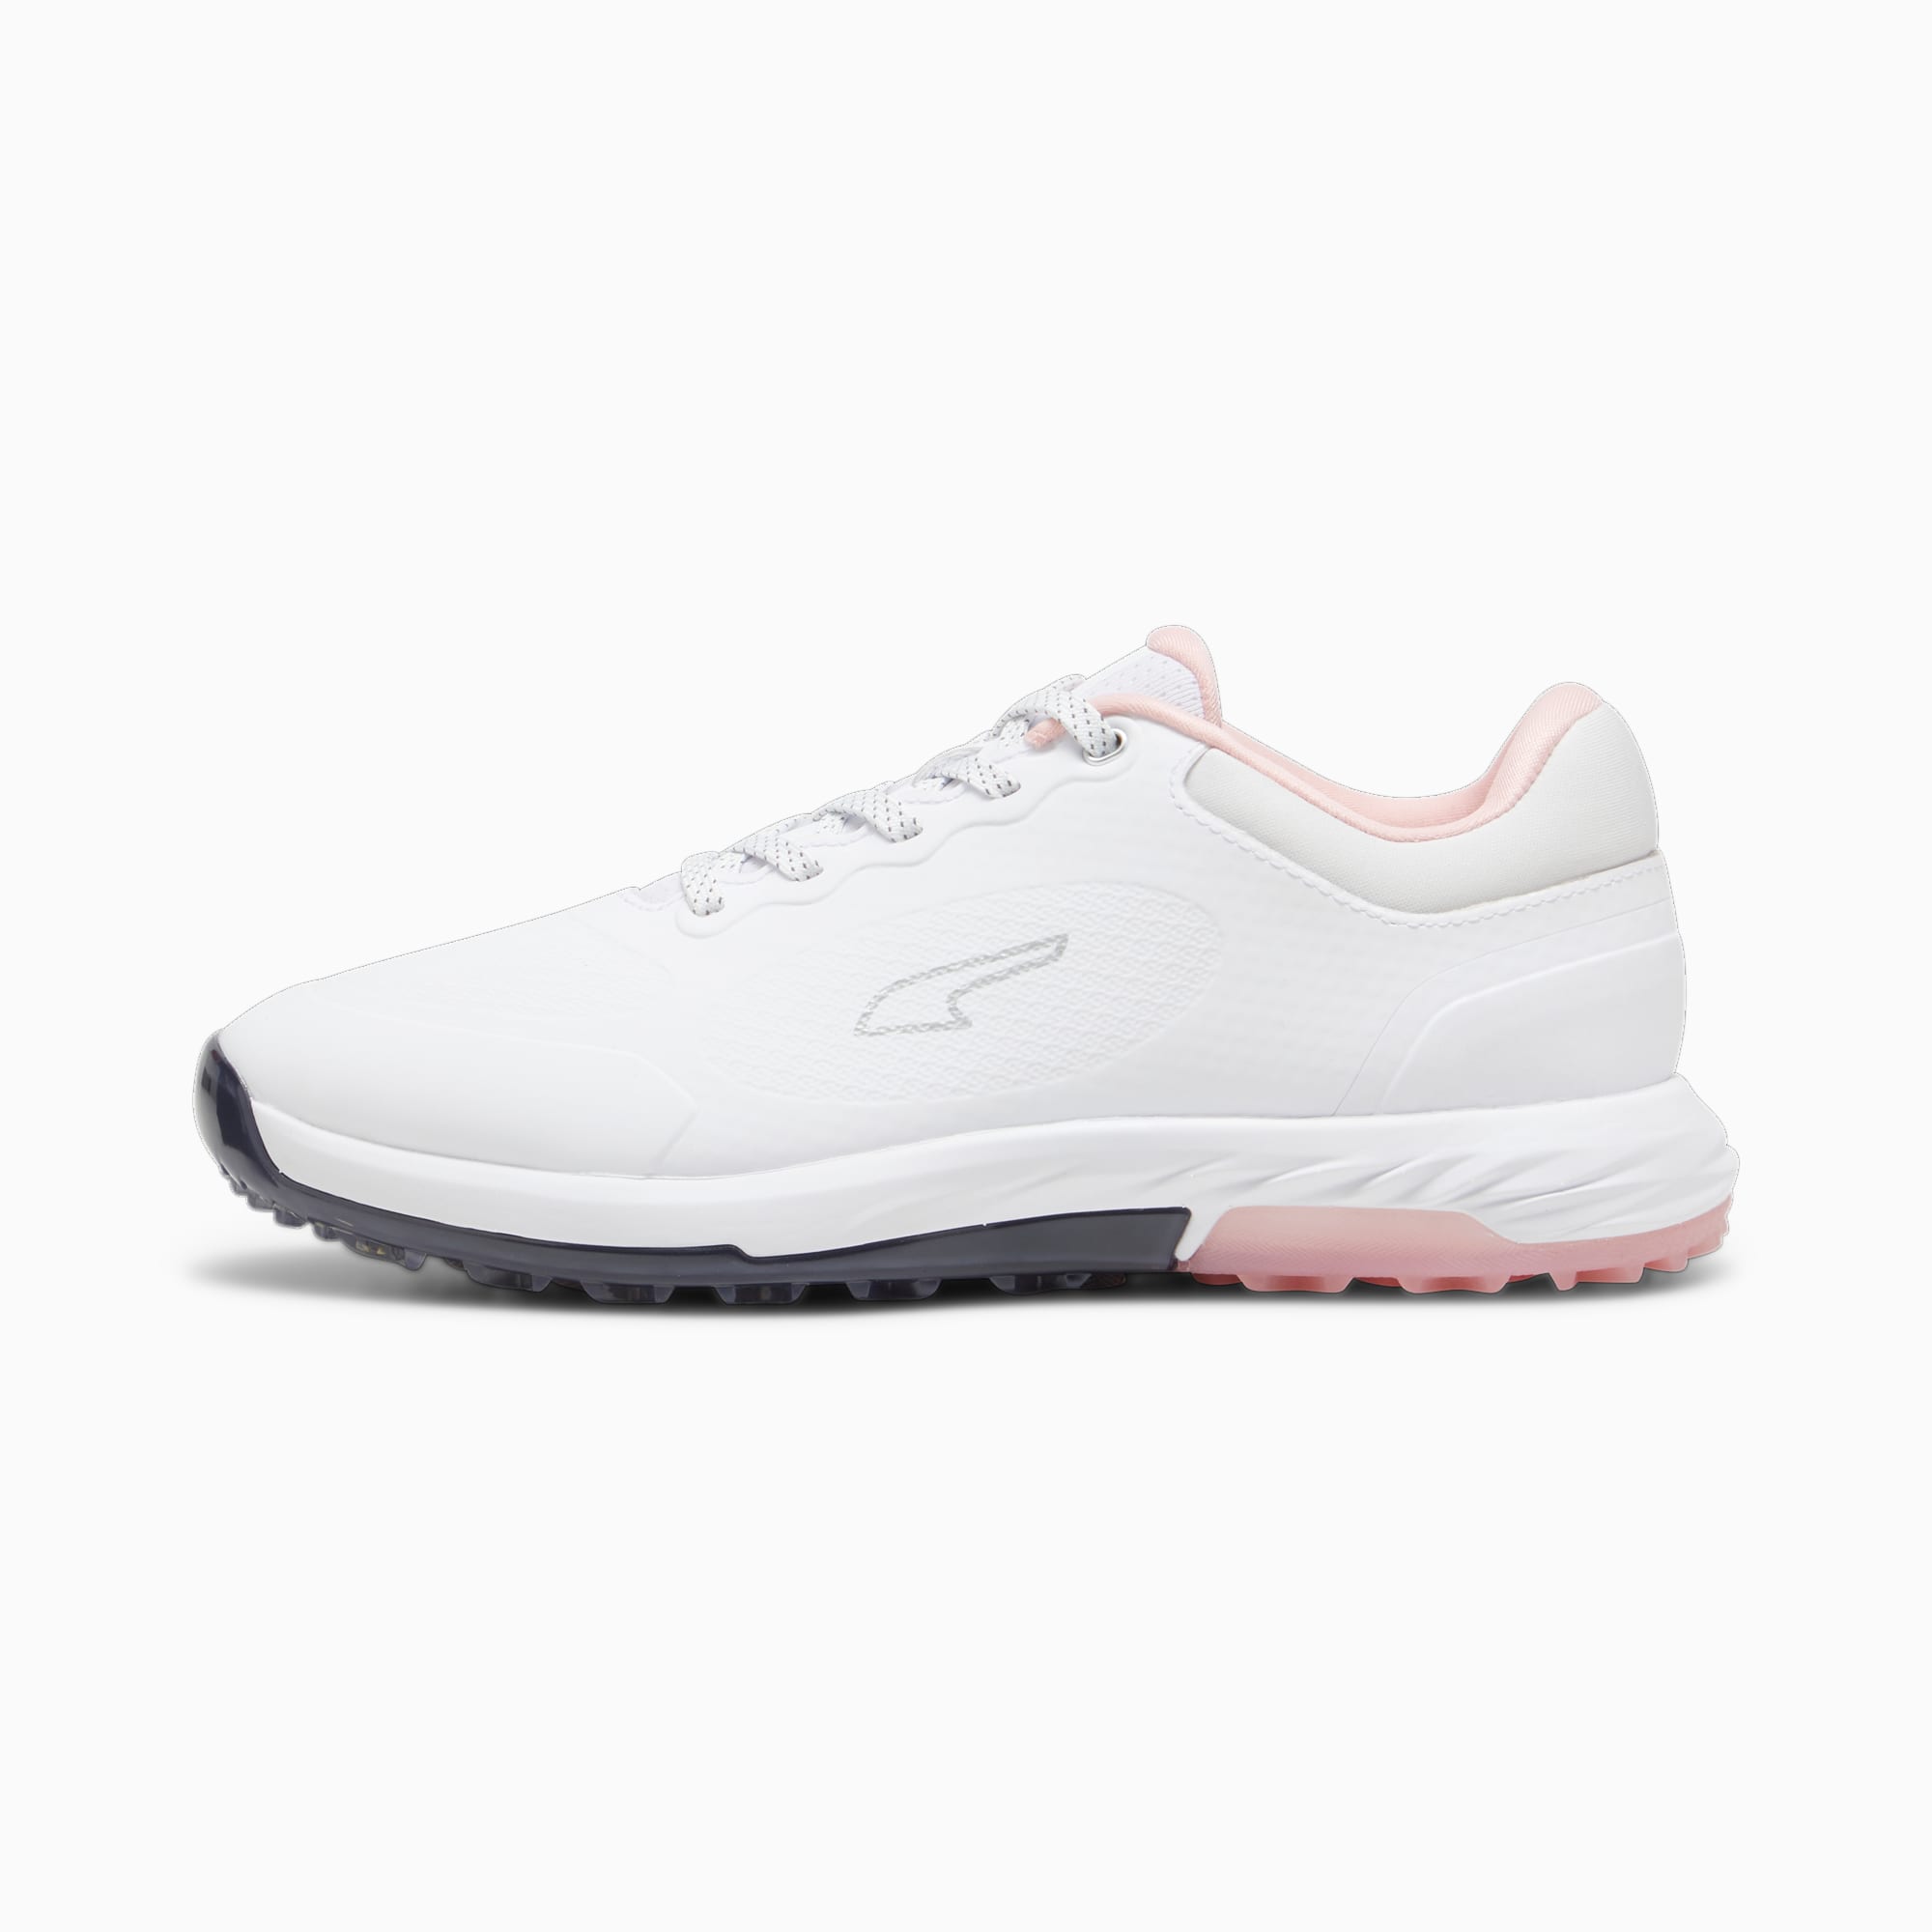 puma chaussures de golf alphacat nitro™ femme, blanc/bleu/rose